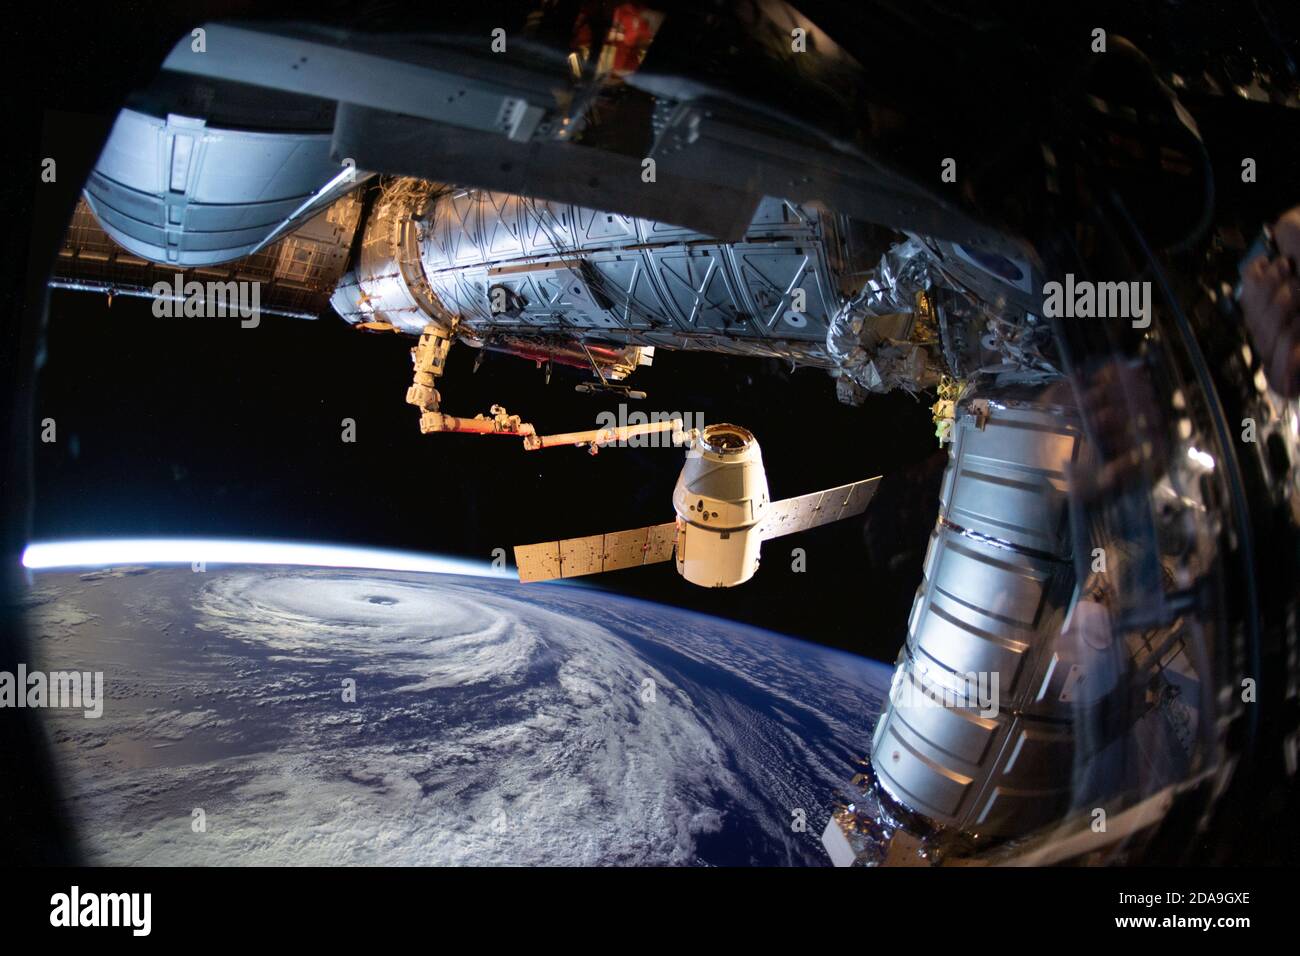 Planet Erde und Hurrikan aus dem Weltraum aus der Raumstation Bullauge. Elemente dieses Bildes, die von der NASA eingerichtet wurden. Stockfoto